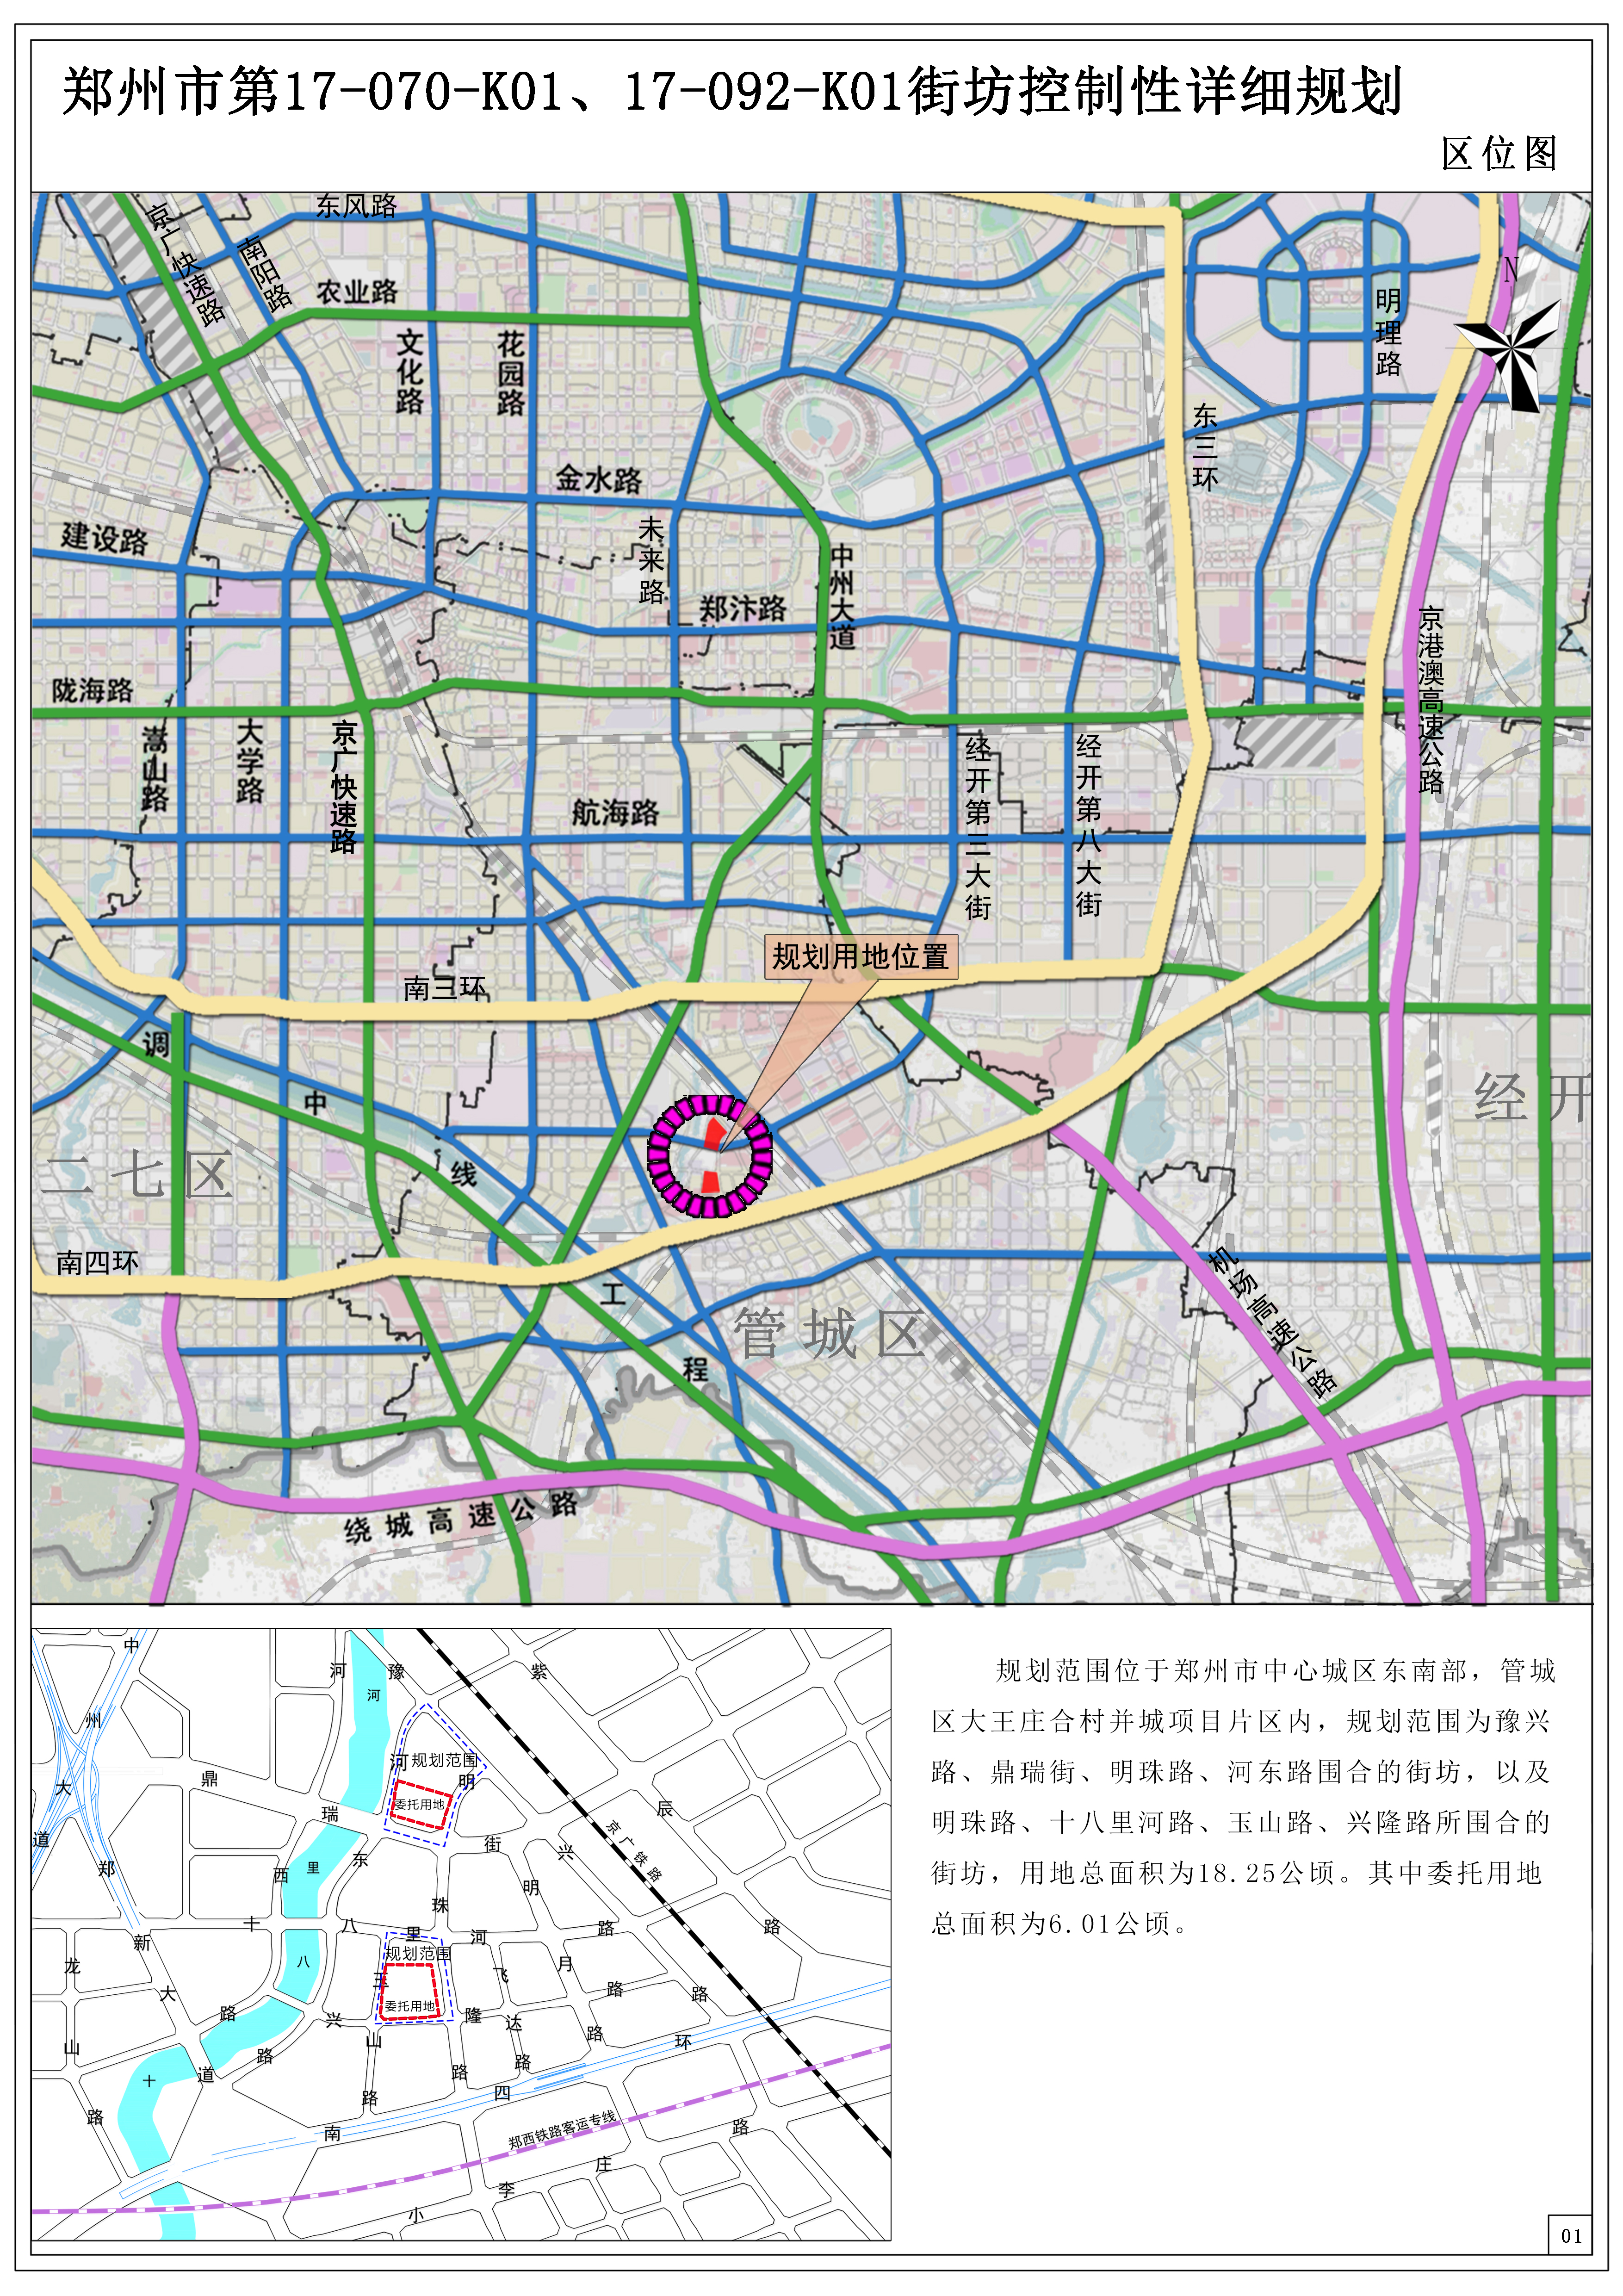 郑州市第17-070-K01、17-092-K01街坊 控制性详细规划